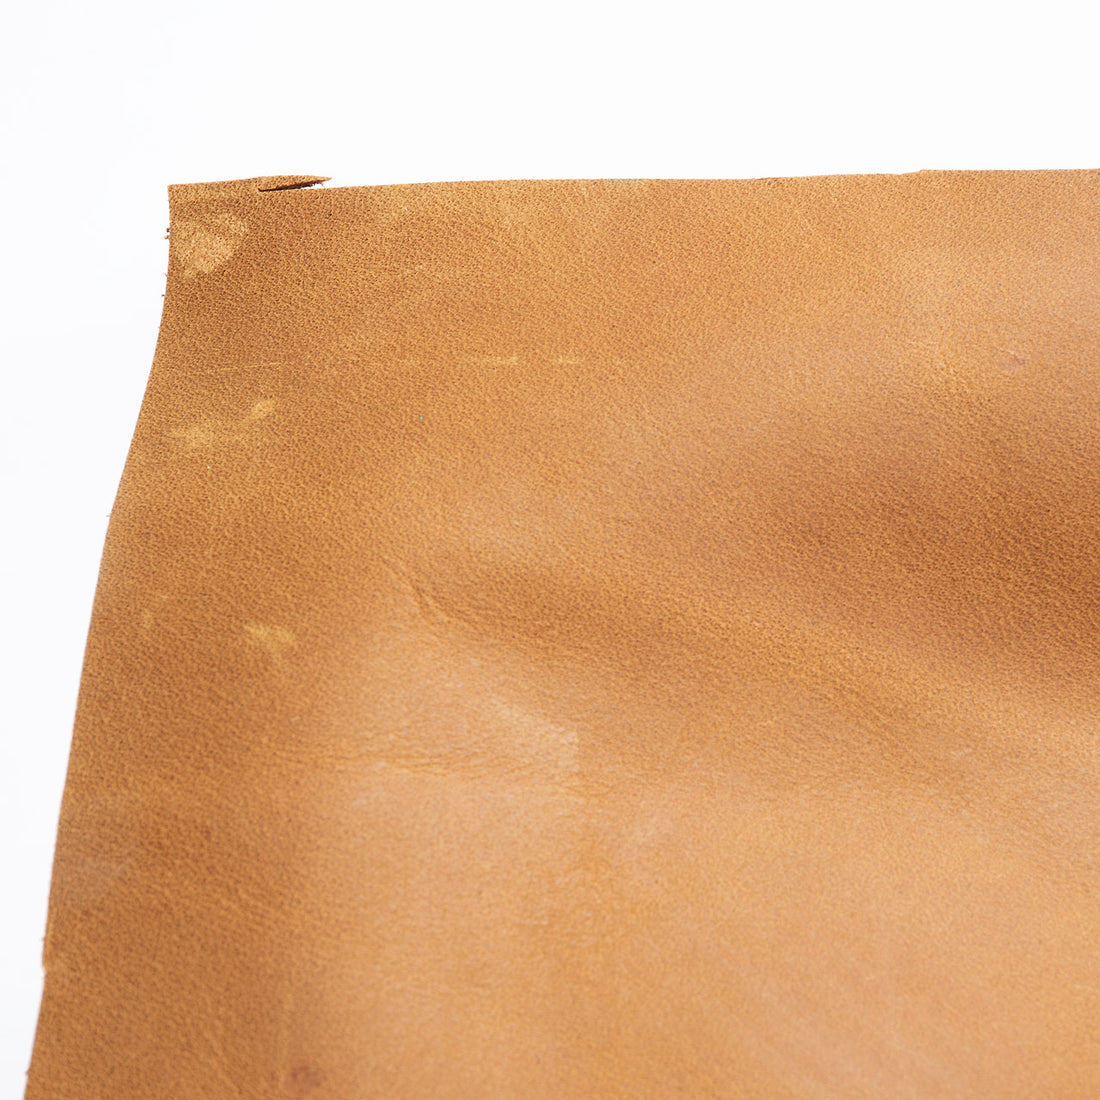 Yellow-brown distress leather sheet - Pre cut